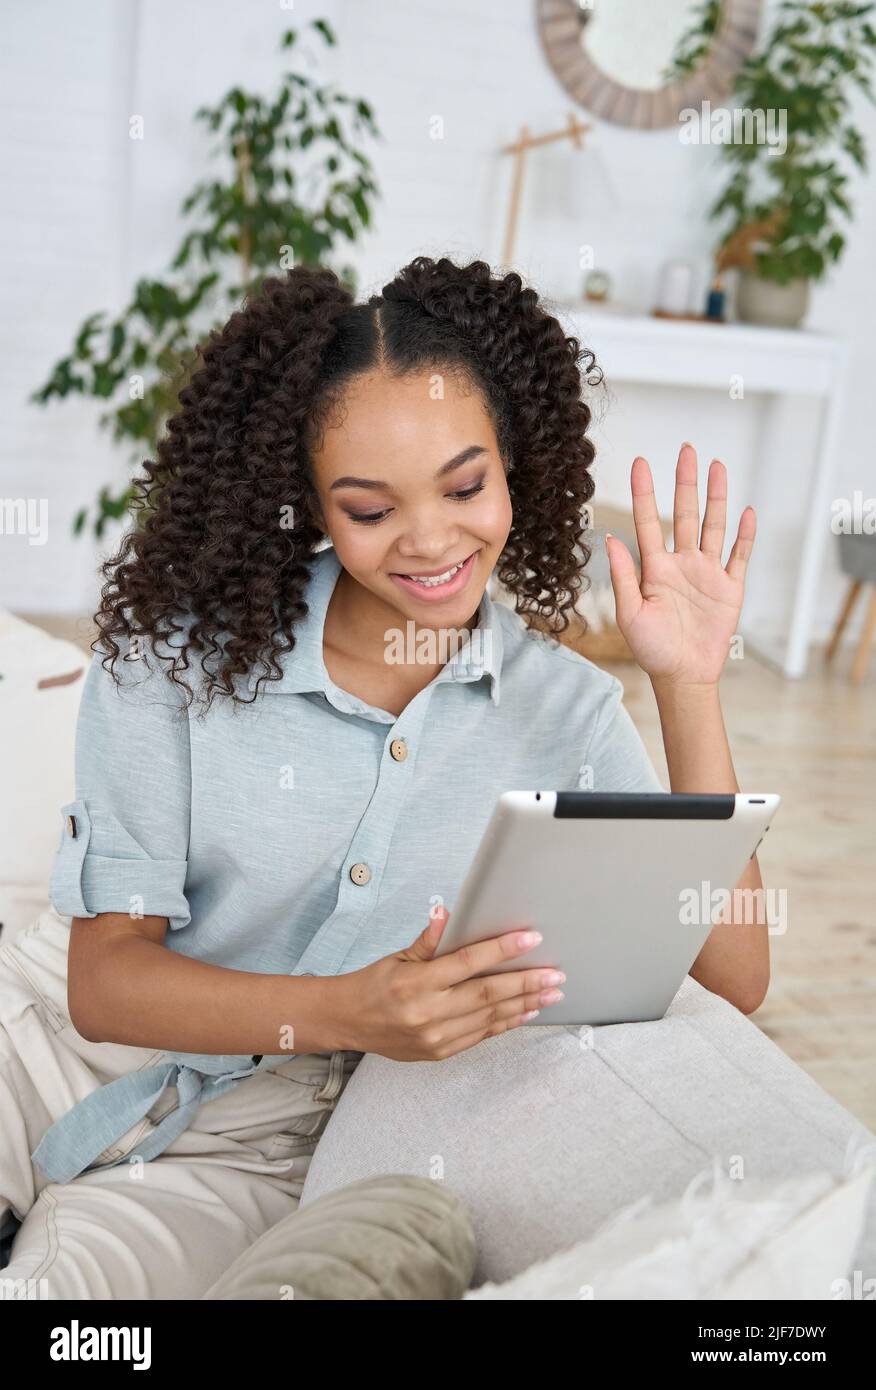 Teen girl afroamericana che agita usando il tablet digitale che ha callt di distanza. Foto Stock